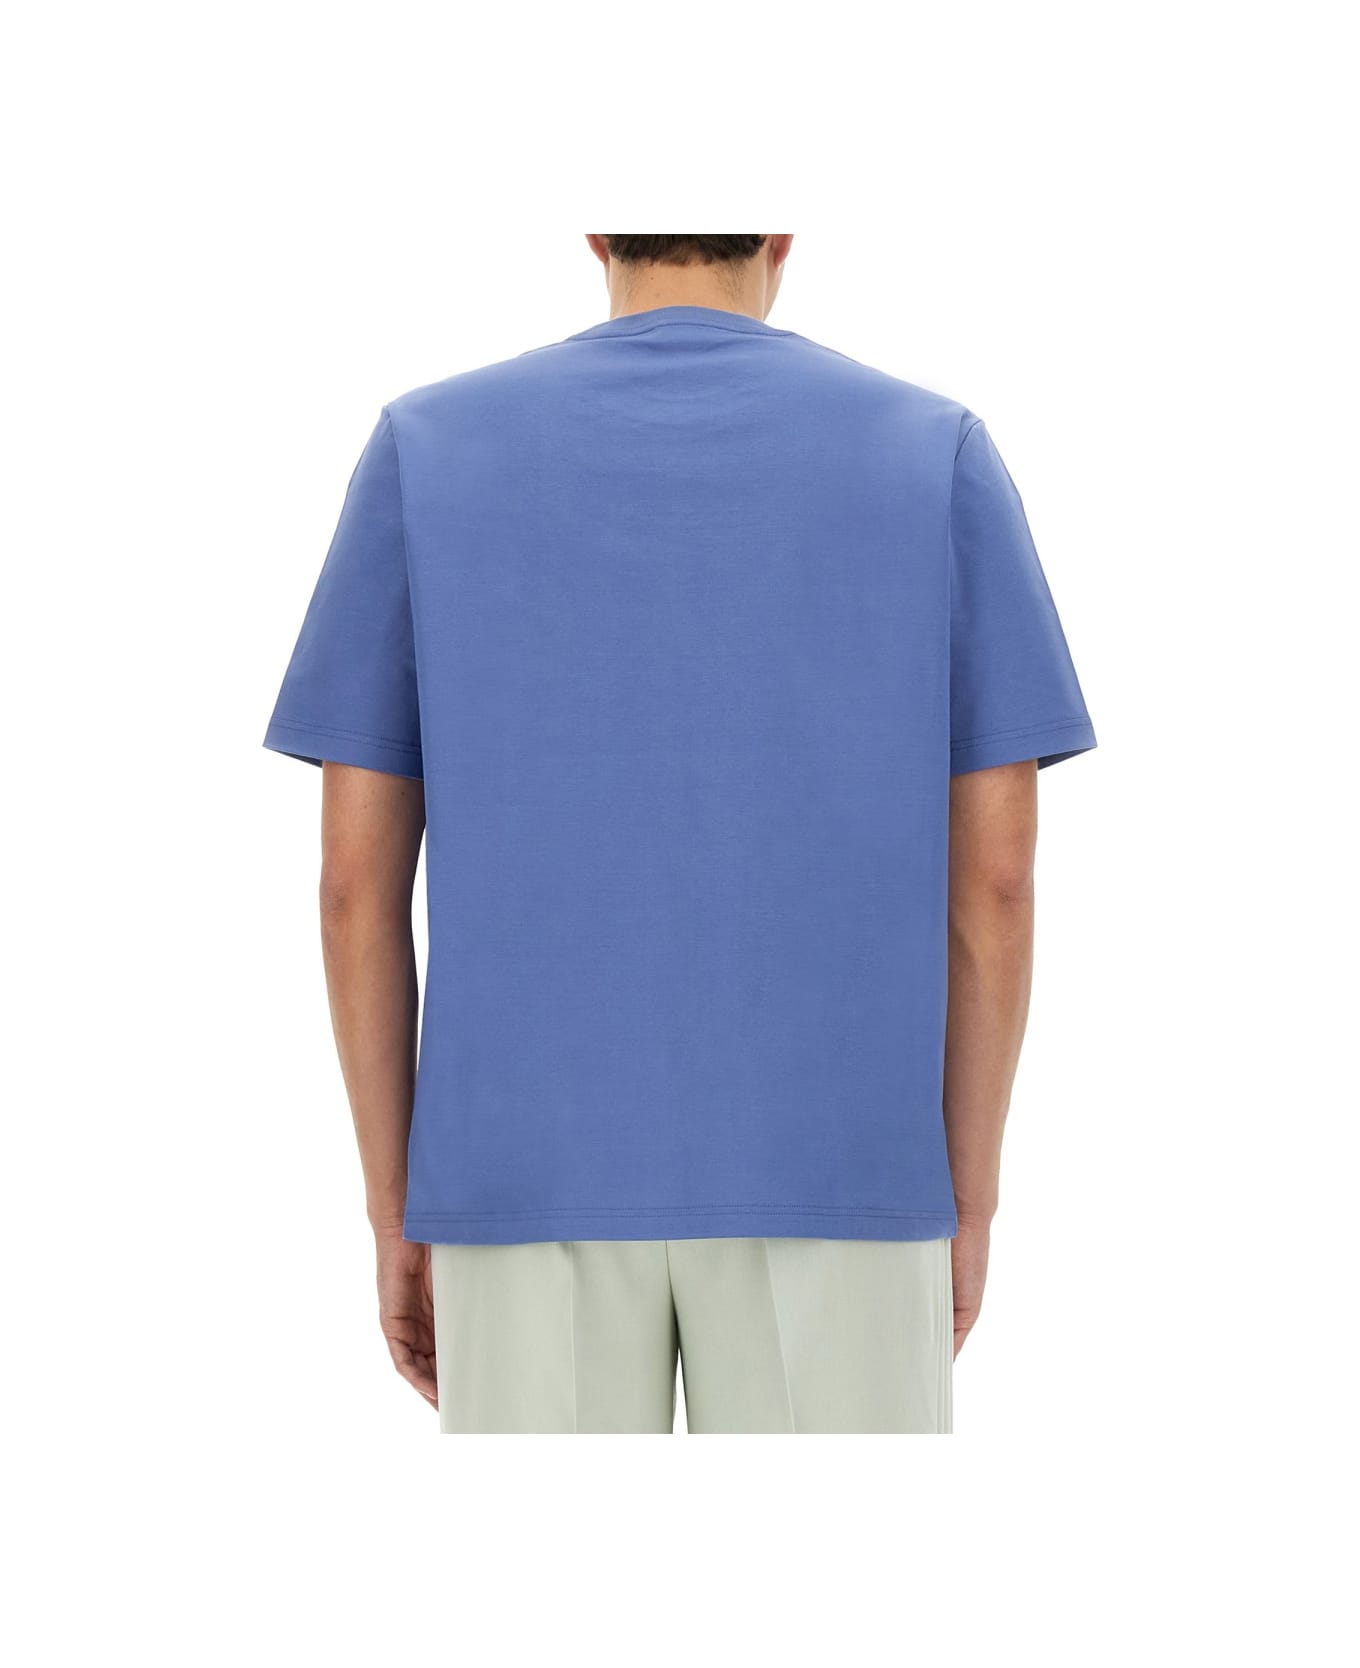 Lanvin Cotton T-shirt - MULTICOLOUR